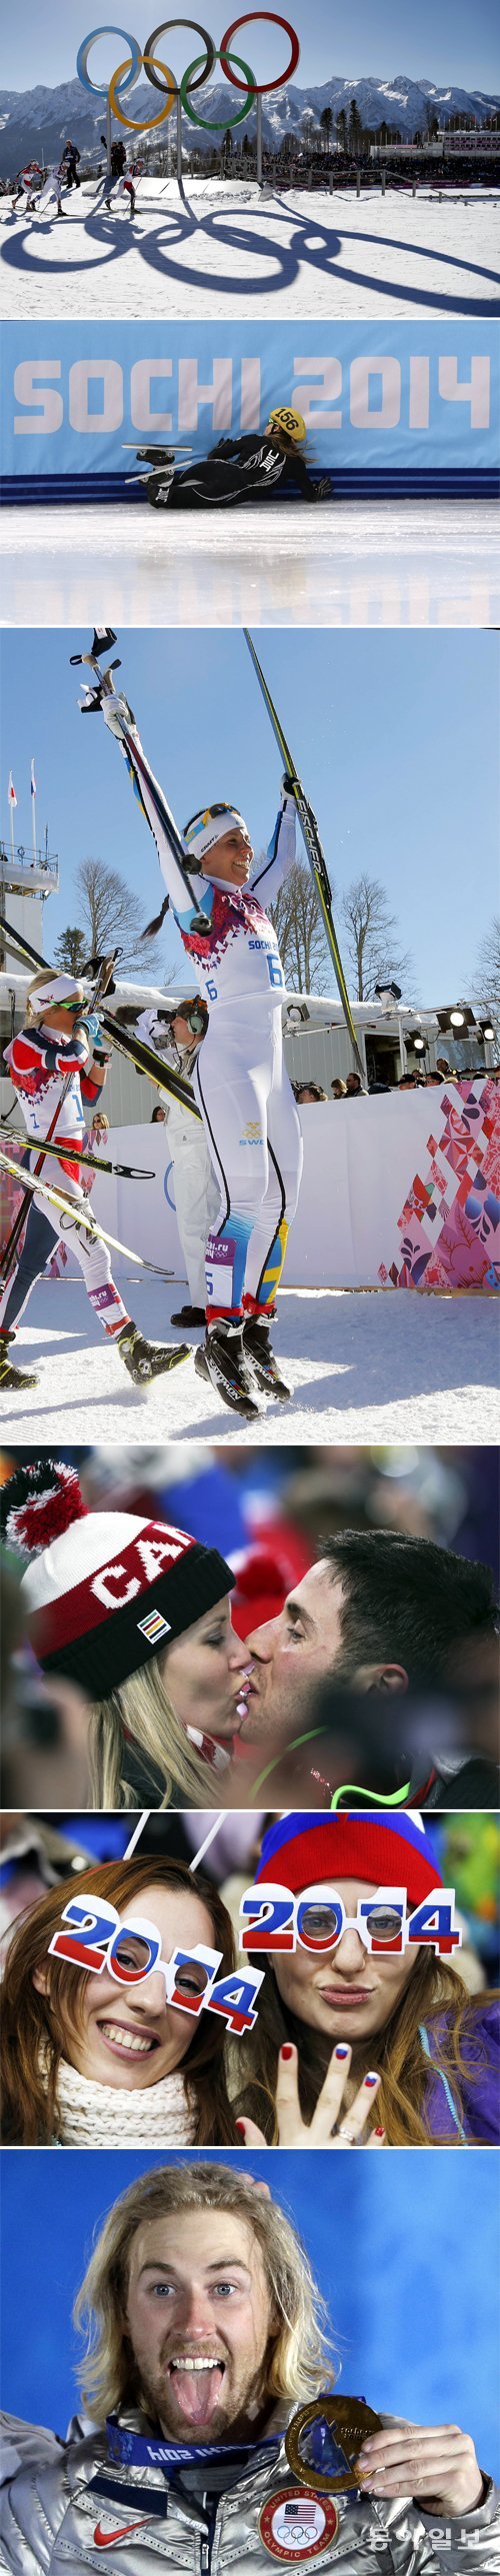 [1]노르웨이의 마리트 비에르옌(오른쪽) 등 여자 크로스컨트리 스키 선수들이 8일 라우라 크로스컨트리 장에서 열린 15km 
결선에서 오륜동상 앞을 질주하고 있다. 비에르옌은 38분33초6으로 우승하며 대회 2연패에 성공했다. 비에르옌은 2002년 
솔트레이크 대회부터 4회 연속 출전하며 올림픽 메달만 9개(금 4개, 은 3개, 동 1개)를 획득해 ‘철의 여인’으로 불린다. [2]미국의 제시카 스미스는 10일 아이스버그 스케이팅 팰리스에서 열린 쇼트트랙 여자 500m 예선에서 넘어지는 바람에 우승 꿈을 일찌감치 날려버렸다. [3]스웨덴의 샤를로테 칼라가 8일 열린 여자 크로스컨트리 스키 15km에서 은메달을 획득한 뒤 기뻐하고 있다. [4]캐나다의 알렉스 빌로도가 11일 열린 프리스타일 스키 남자 모굴 결선에서 금메달을 획득한 뒤 여자 친구와 키스하고 있다. [5]러시아의 여성팬들이 소치 겨울올림픽이 열리는 2014년을 뜻하는 ‘2014’ 안경을 쓰고 9일 열린 러시아와 독일의 여자 아이스하키 경기를 관람하고 있다. [6]8일 열린 스노보드 남자 슬로프스타일에서 대회 첫 금메달을 획득한 미국의 세이지 코첸버그가 금메달을 들어 보이며 혓 바닥을 쭉 내미는 우스꽝스운 표정을 짓고 있다.